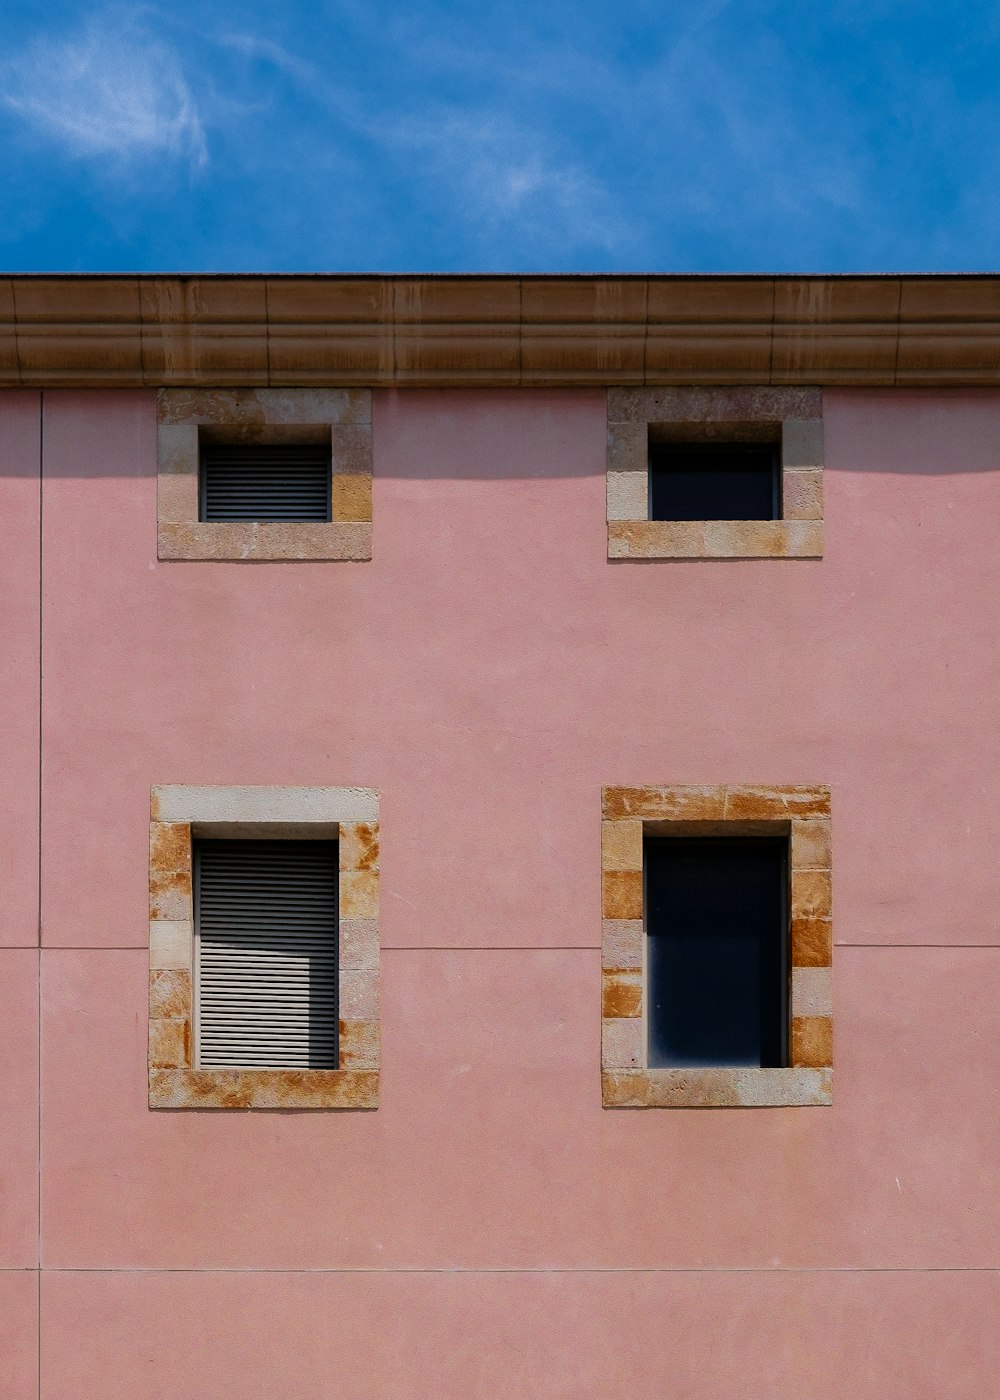 fotografia minimalista de edifício de concreto com quatro janelas